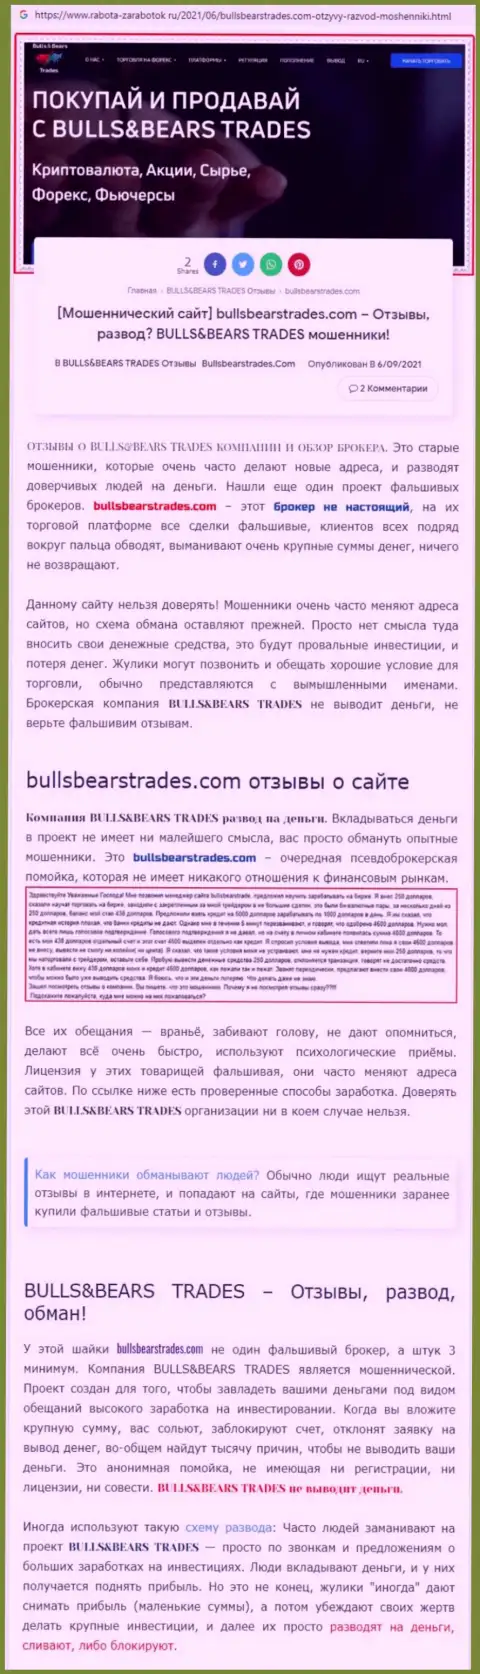 Обзор незаконно действующей конторы BullsBearsTrades Com про то, как грабит доверчивых клиентов